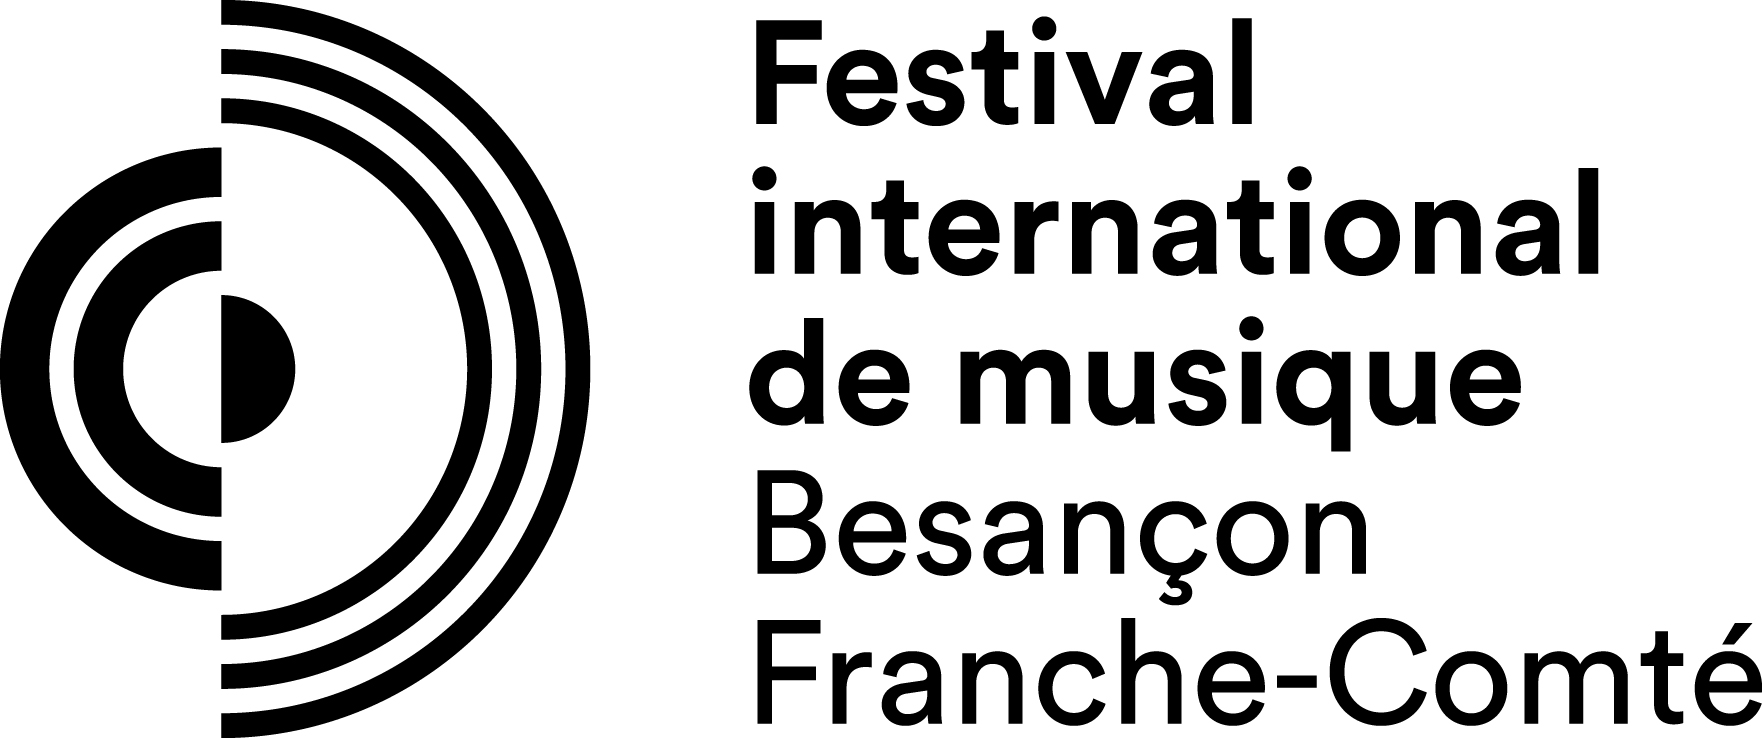 FESTIVAL INTERNATIONAL DE MUSIQUE DE BESANCON